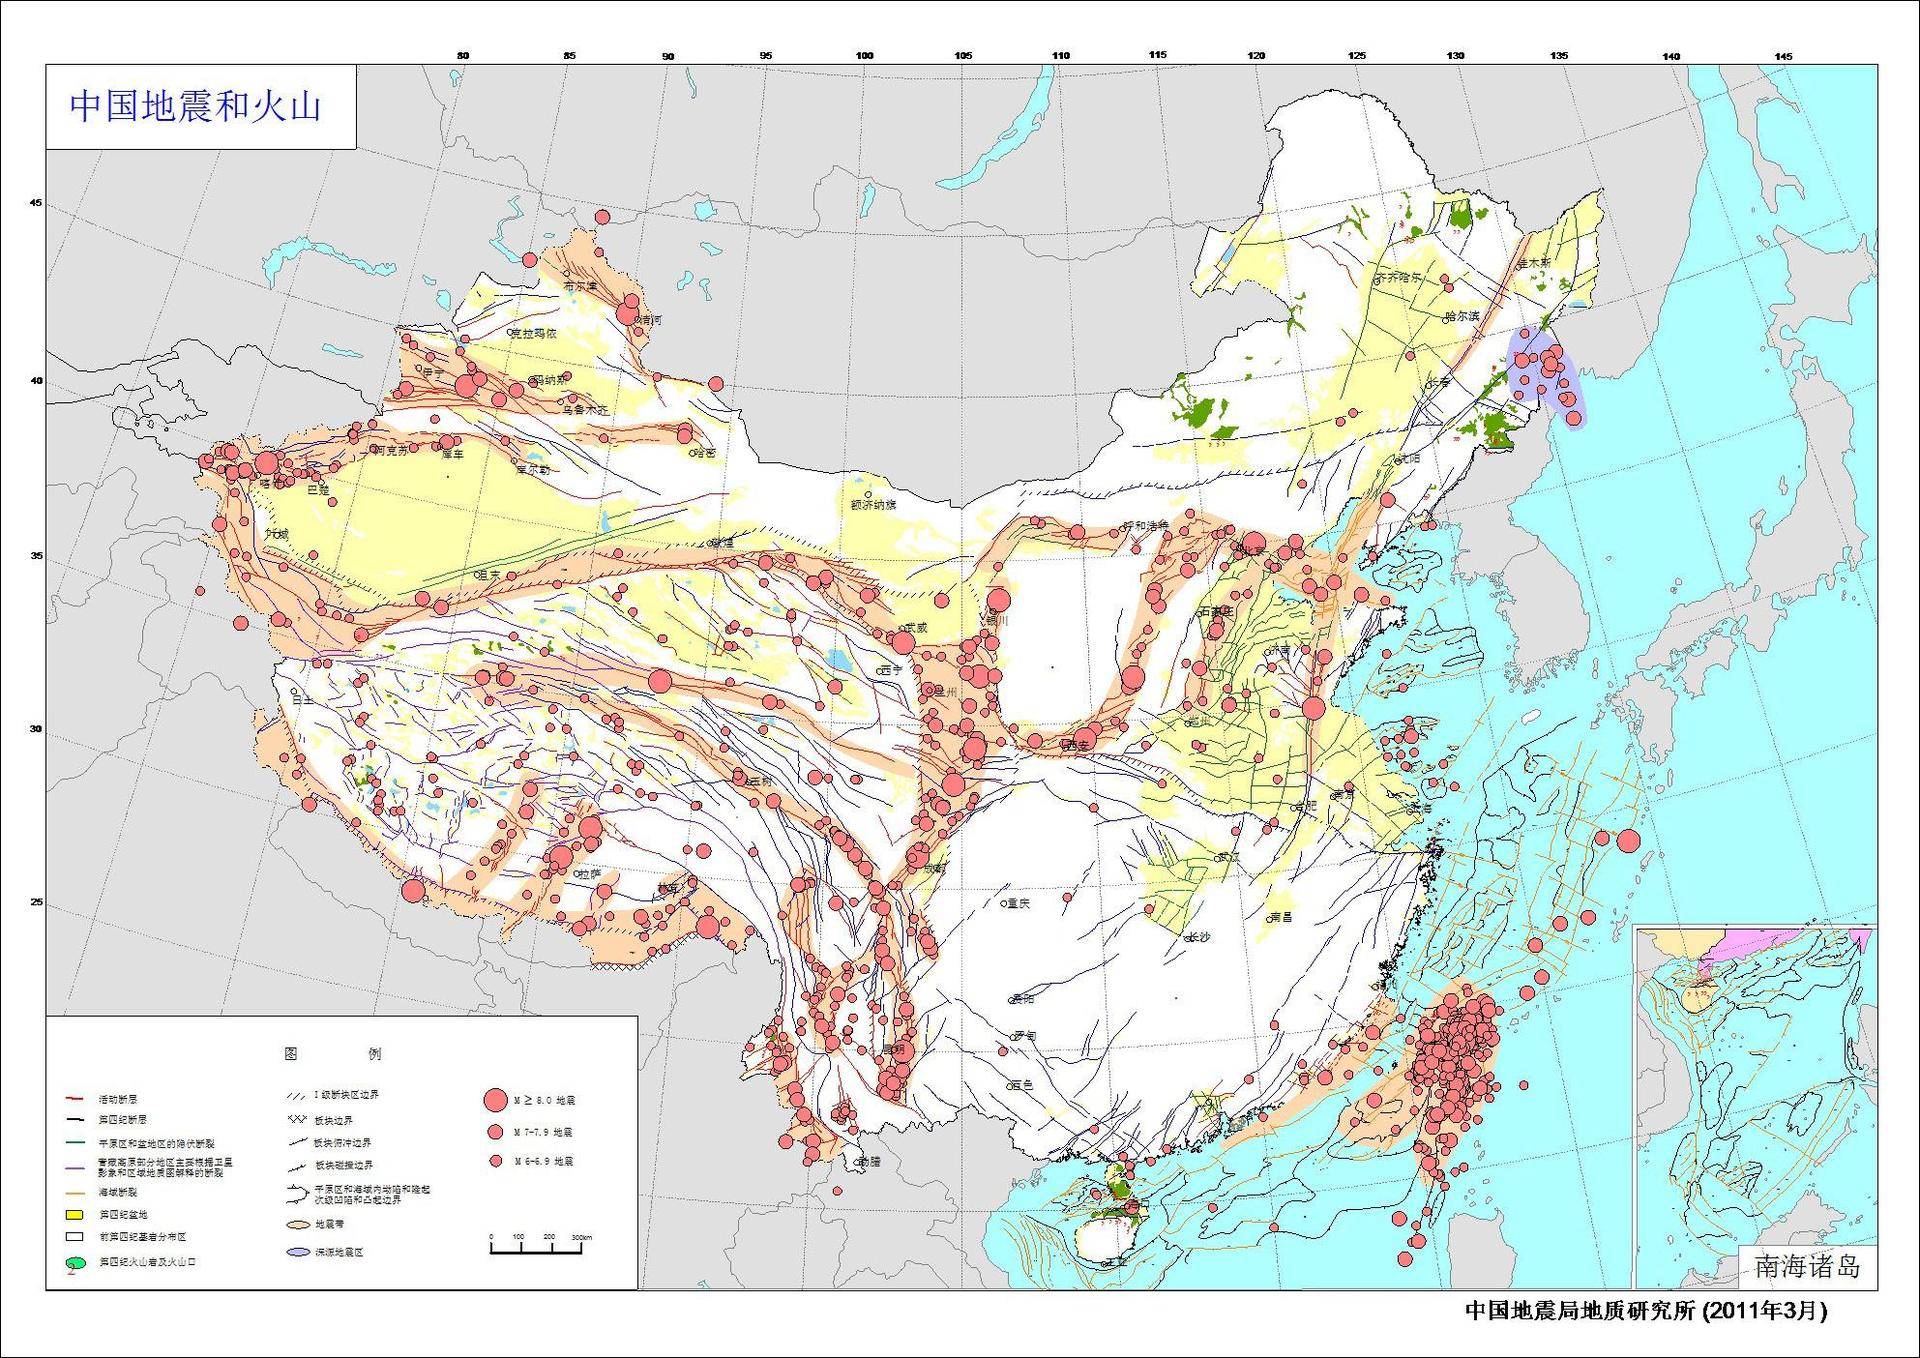 四川还会再发生大地震吗 四川未来8级大地震概率-第1张图片-CNDAO